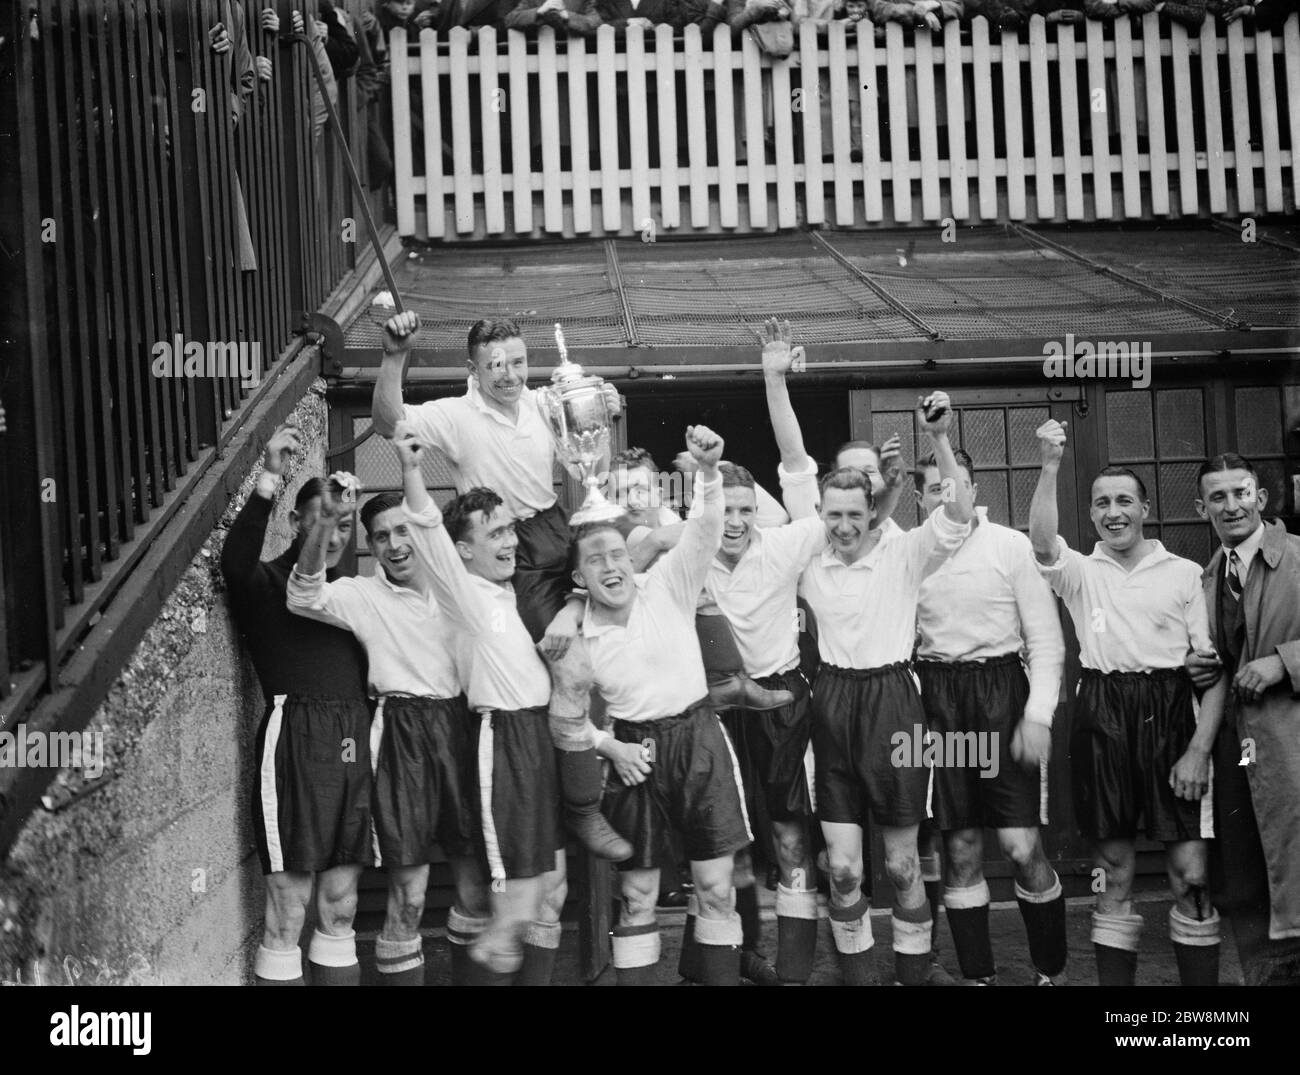 Club de football Bromley contre Club de football Belvedere dans la finale de la coupe amateur FA au stade du club de football Millwall The Den dans le sud de Bermondsey, Londres . Bromley l'équipe gagnante tient la coupe en altitude . 1938 Banque D'Images